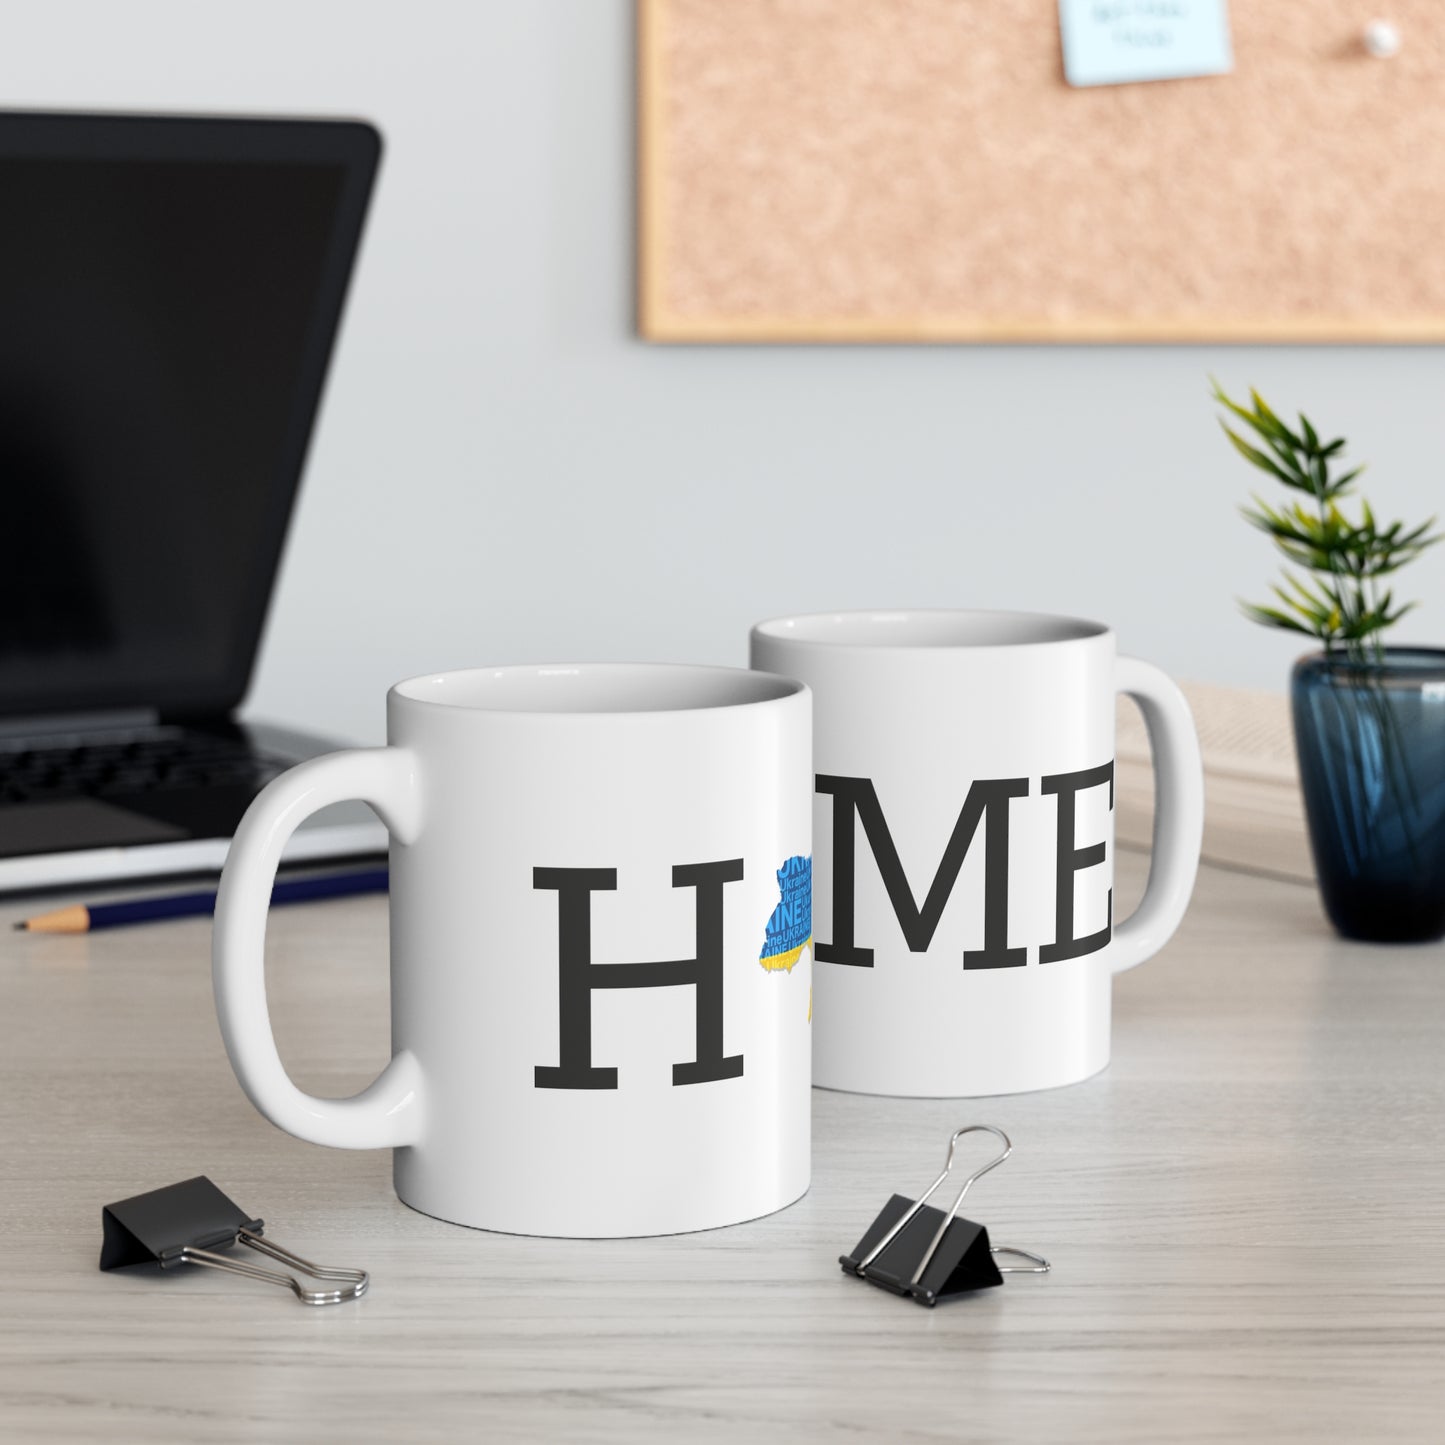 HOME Ceramic Mug 11oz